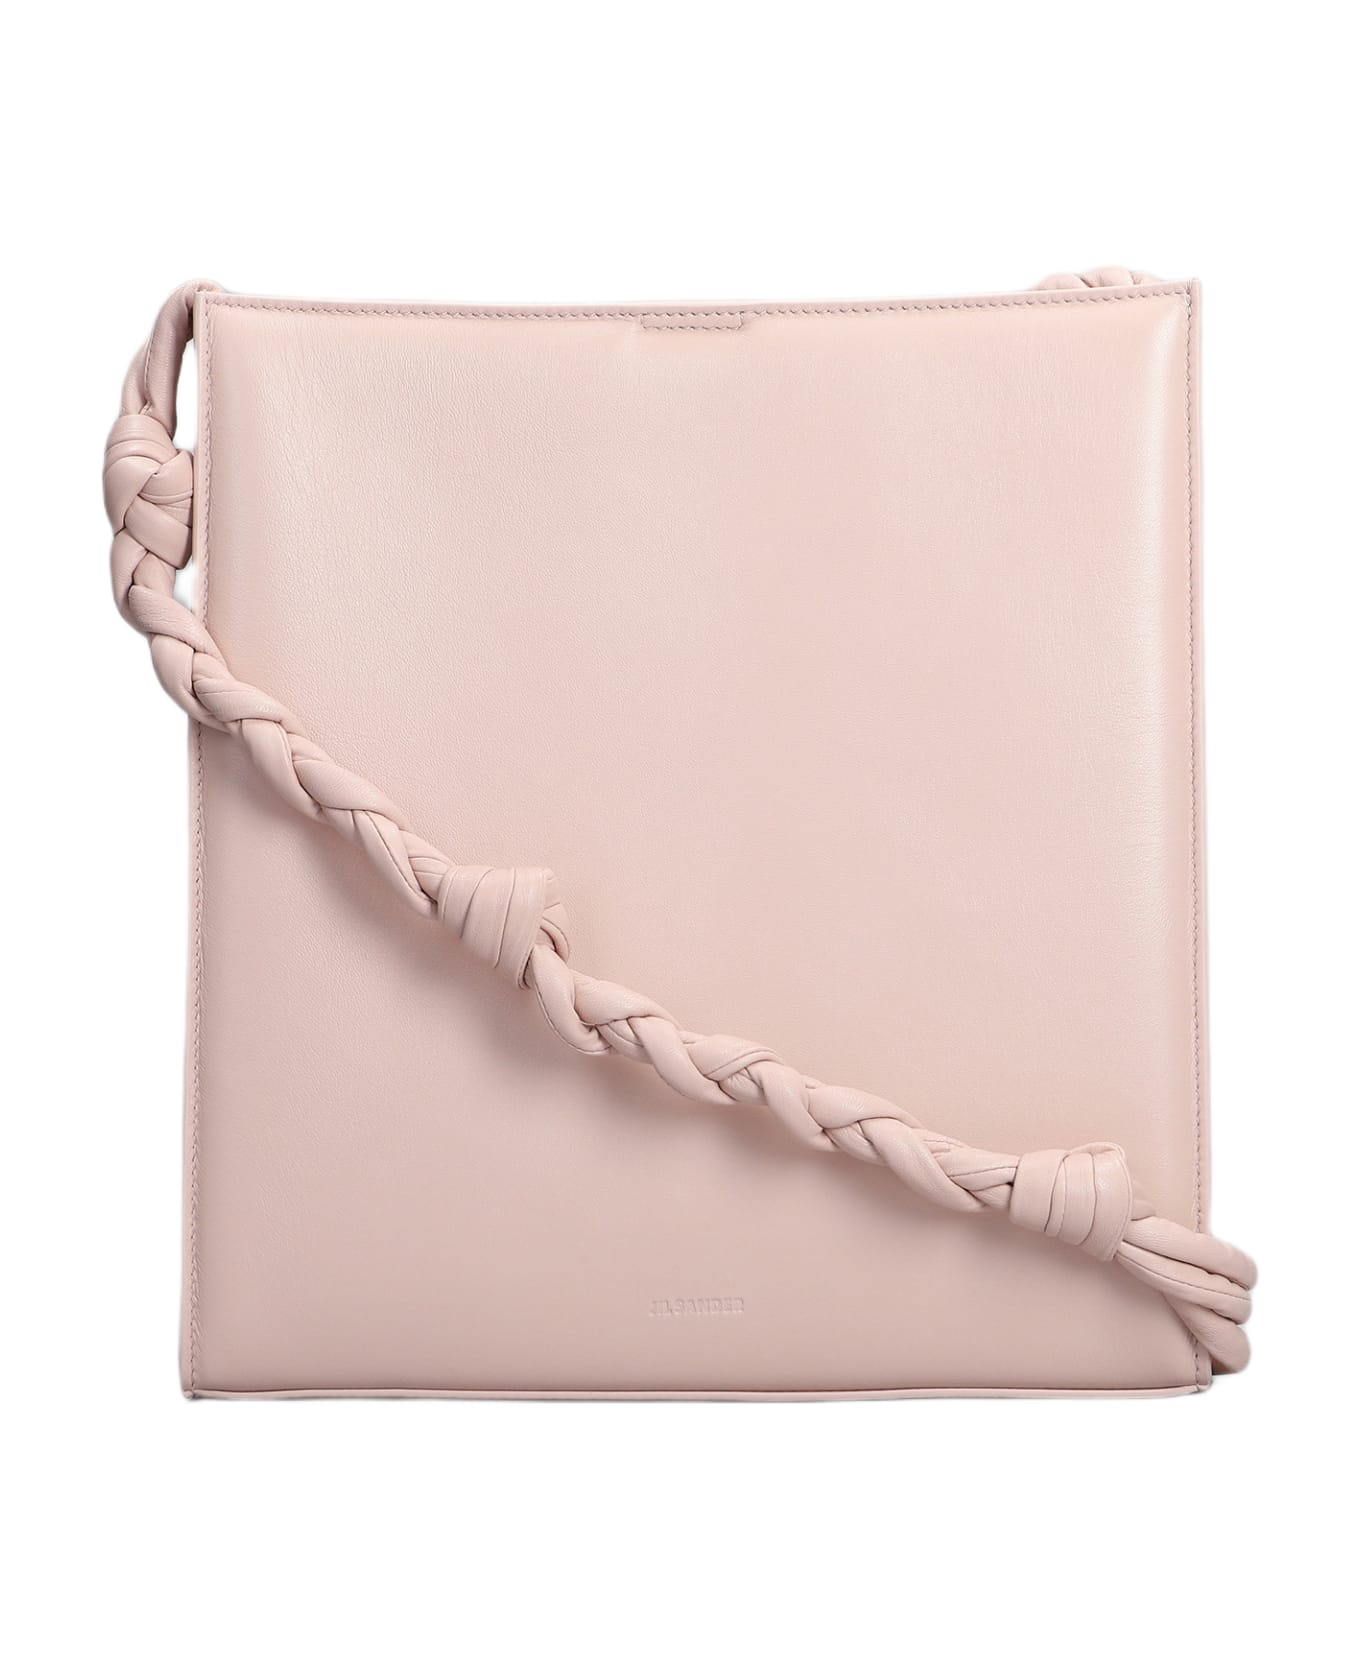 Jil Sander Pink Leather Tangle Shoulder Bag - 663